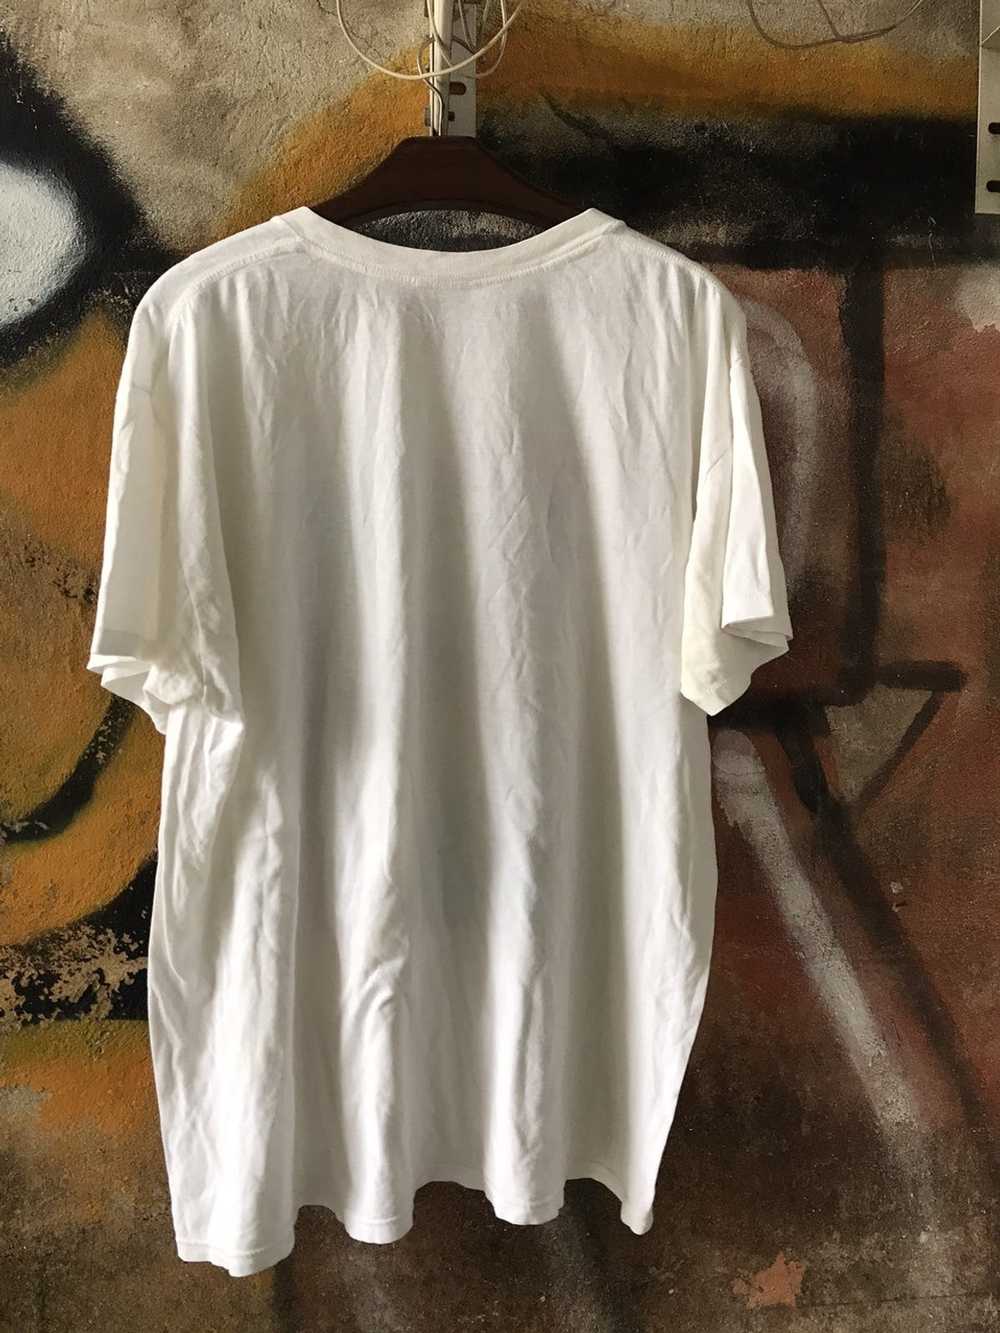 Rock T Shirt × Vintage Vintage 90s Morrissey Shirt - image 7